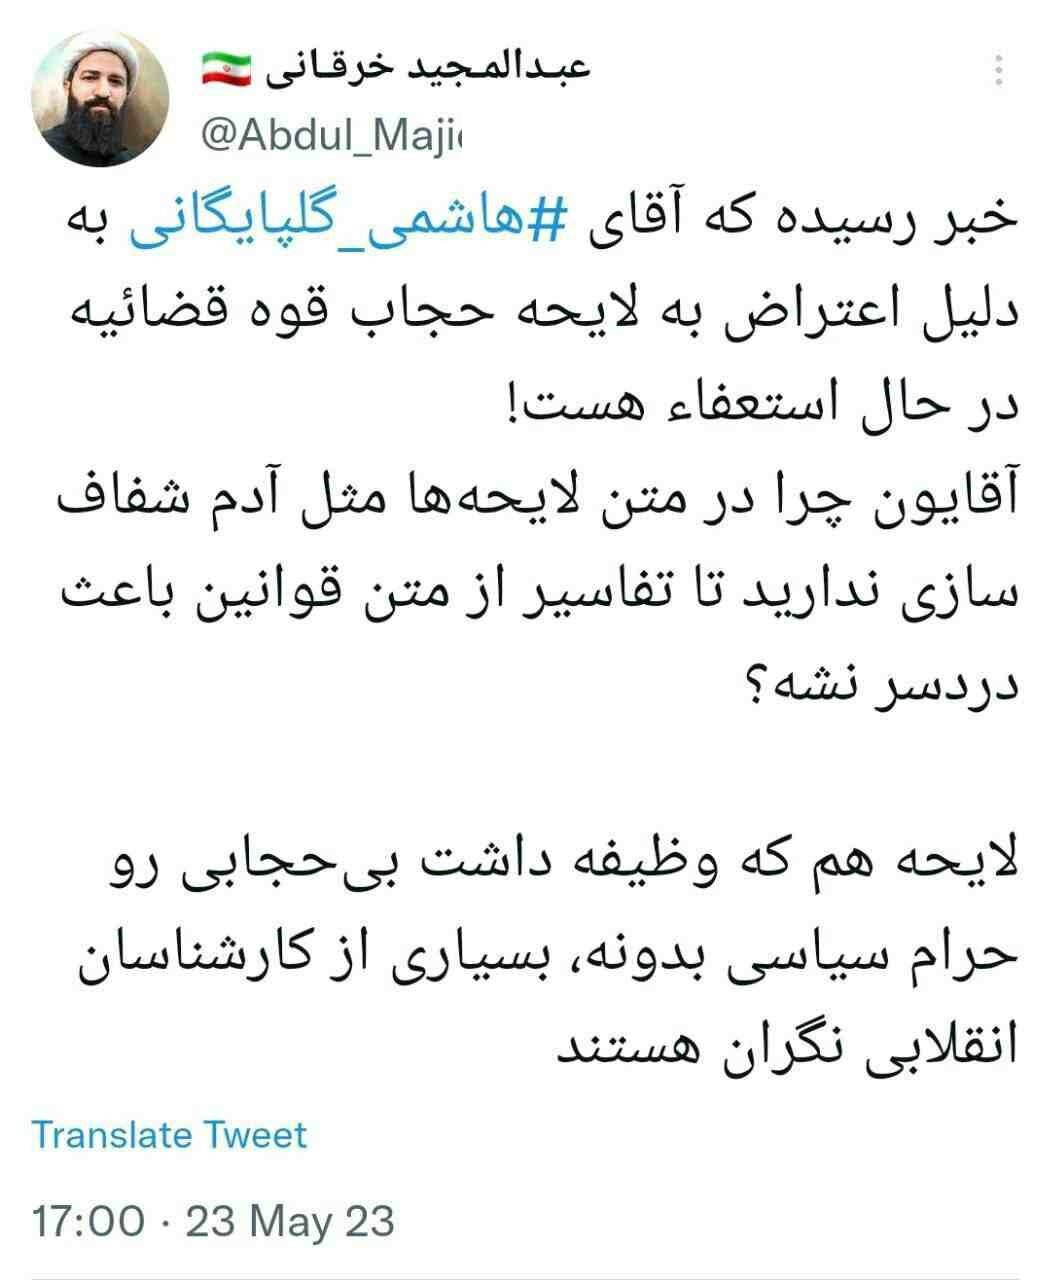 دبیر ستاد نهی از منکر «در حال استعفای اعتراضی» به لایحه حجاب / «بسیاری از کارشناسان انقلابی نگران هستند»